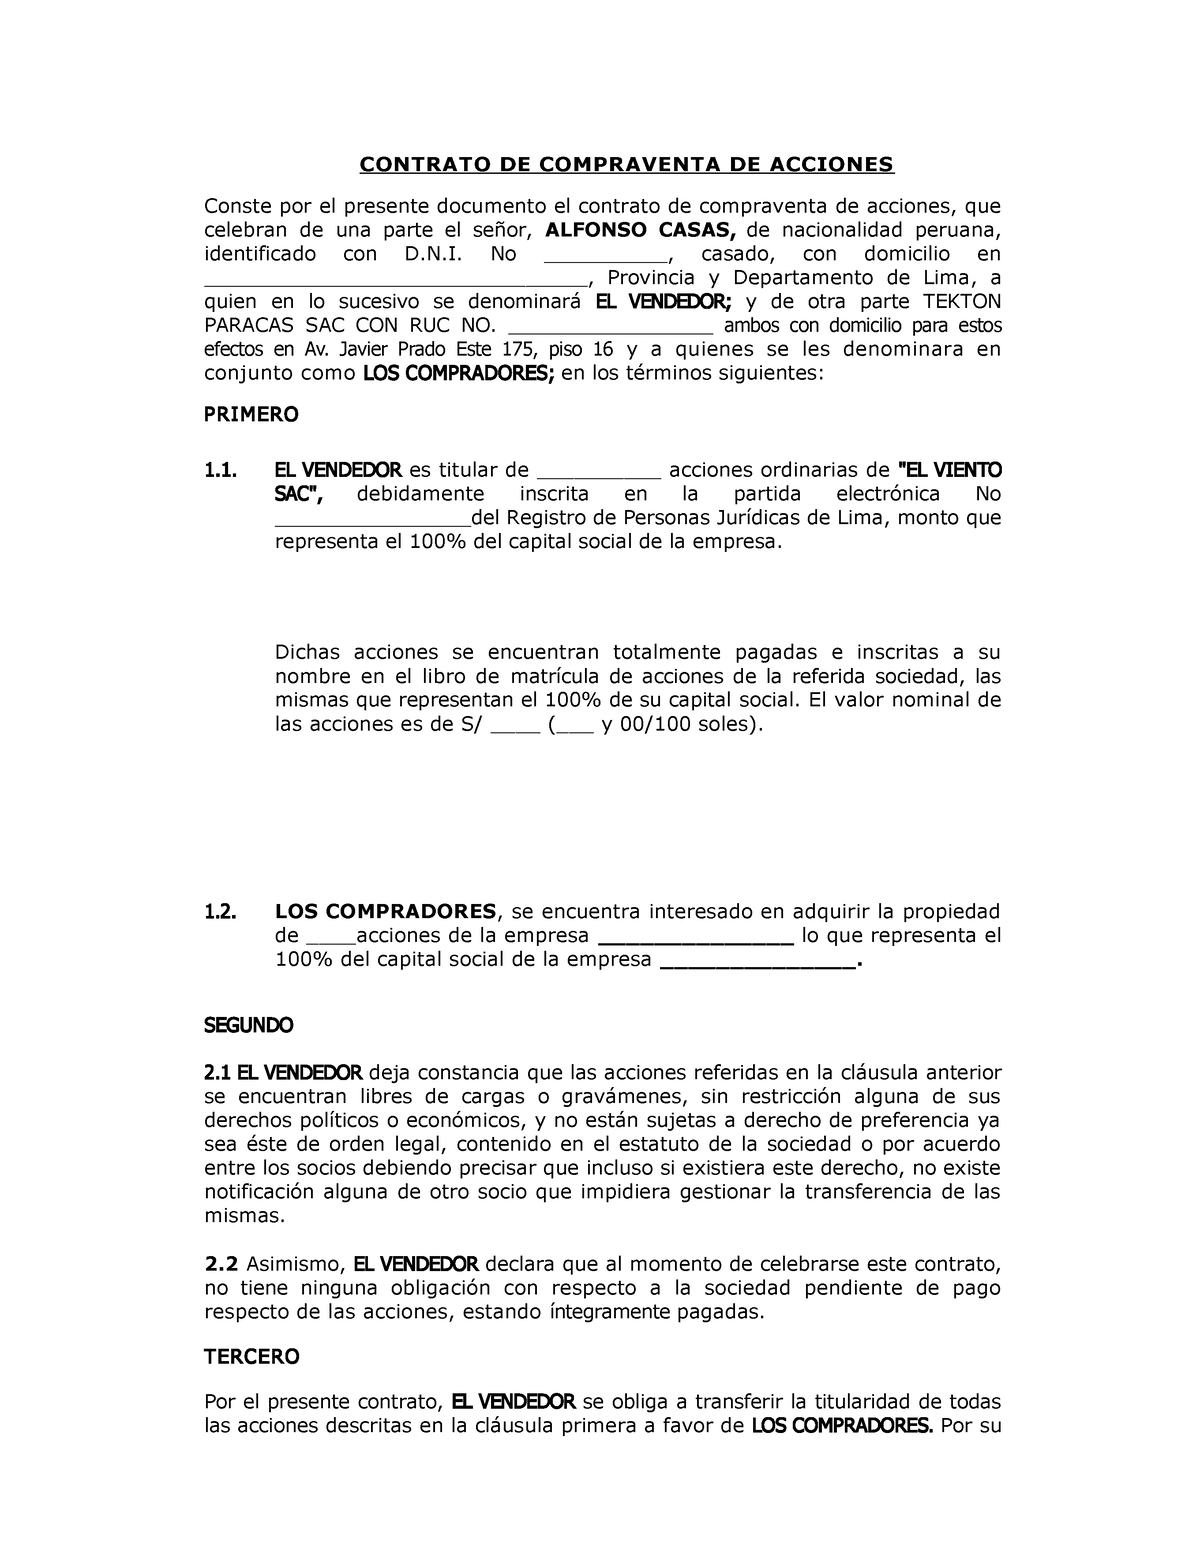 Contrato De Compraventa De Acciones Paracas V2 Contrato De Compraventa De Acciones Conste Por 7511